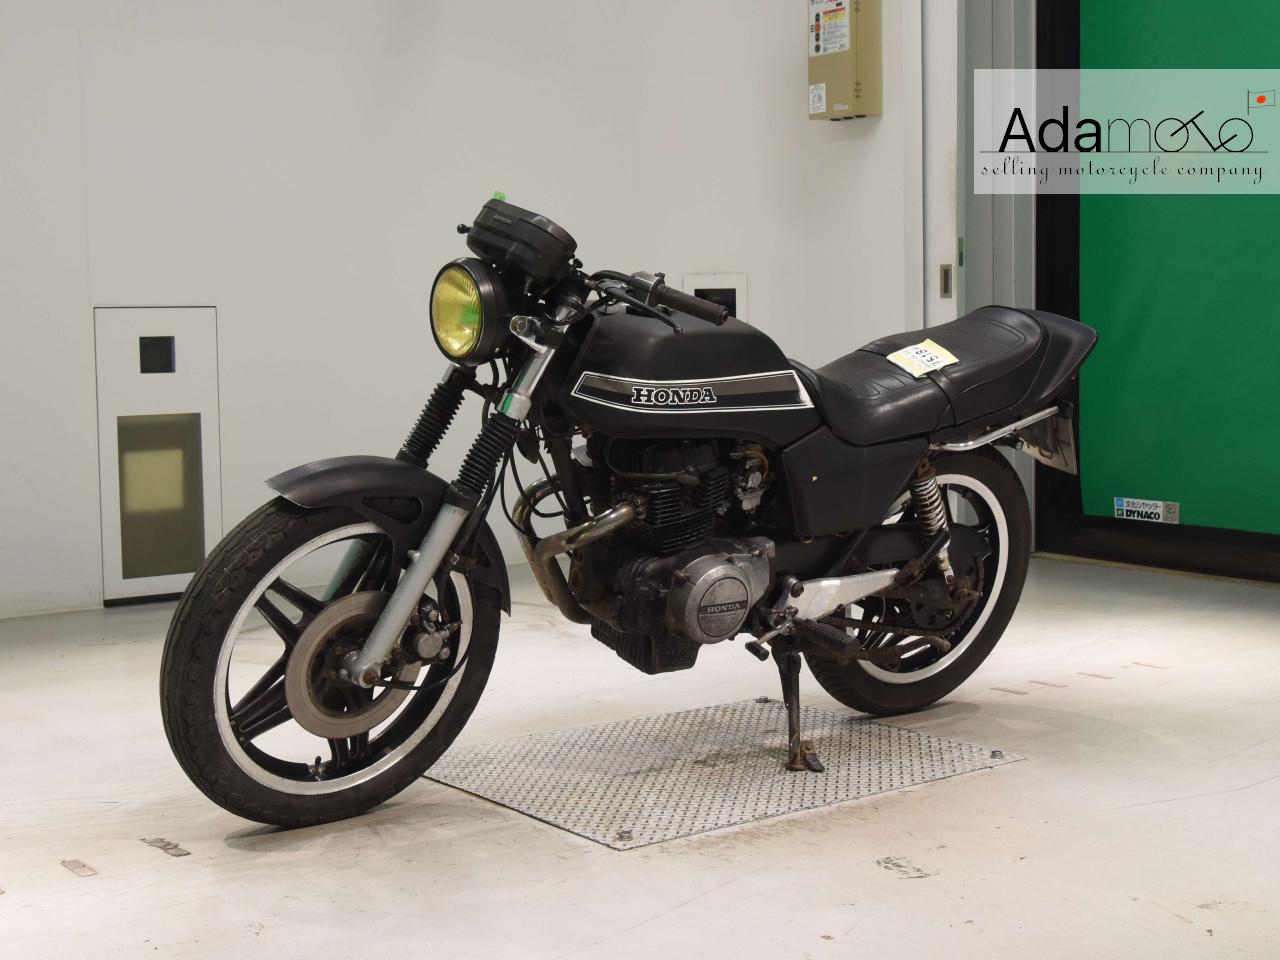 Honda CB250N - Adamoto - Motorcycles from Japan